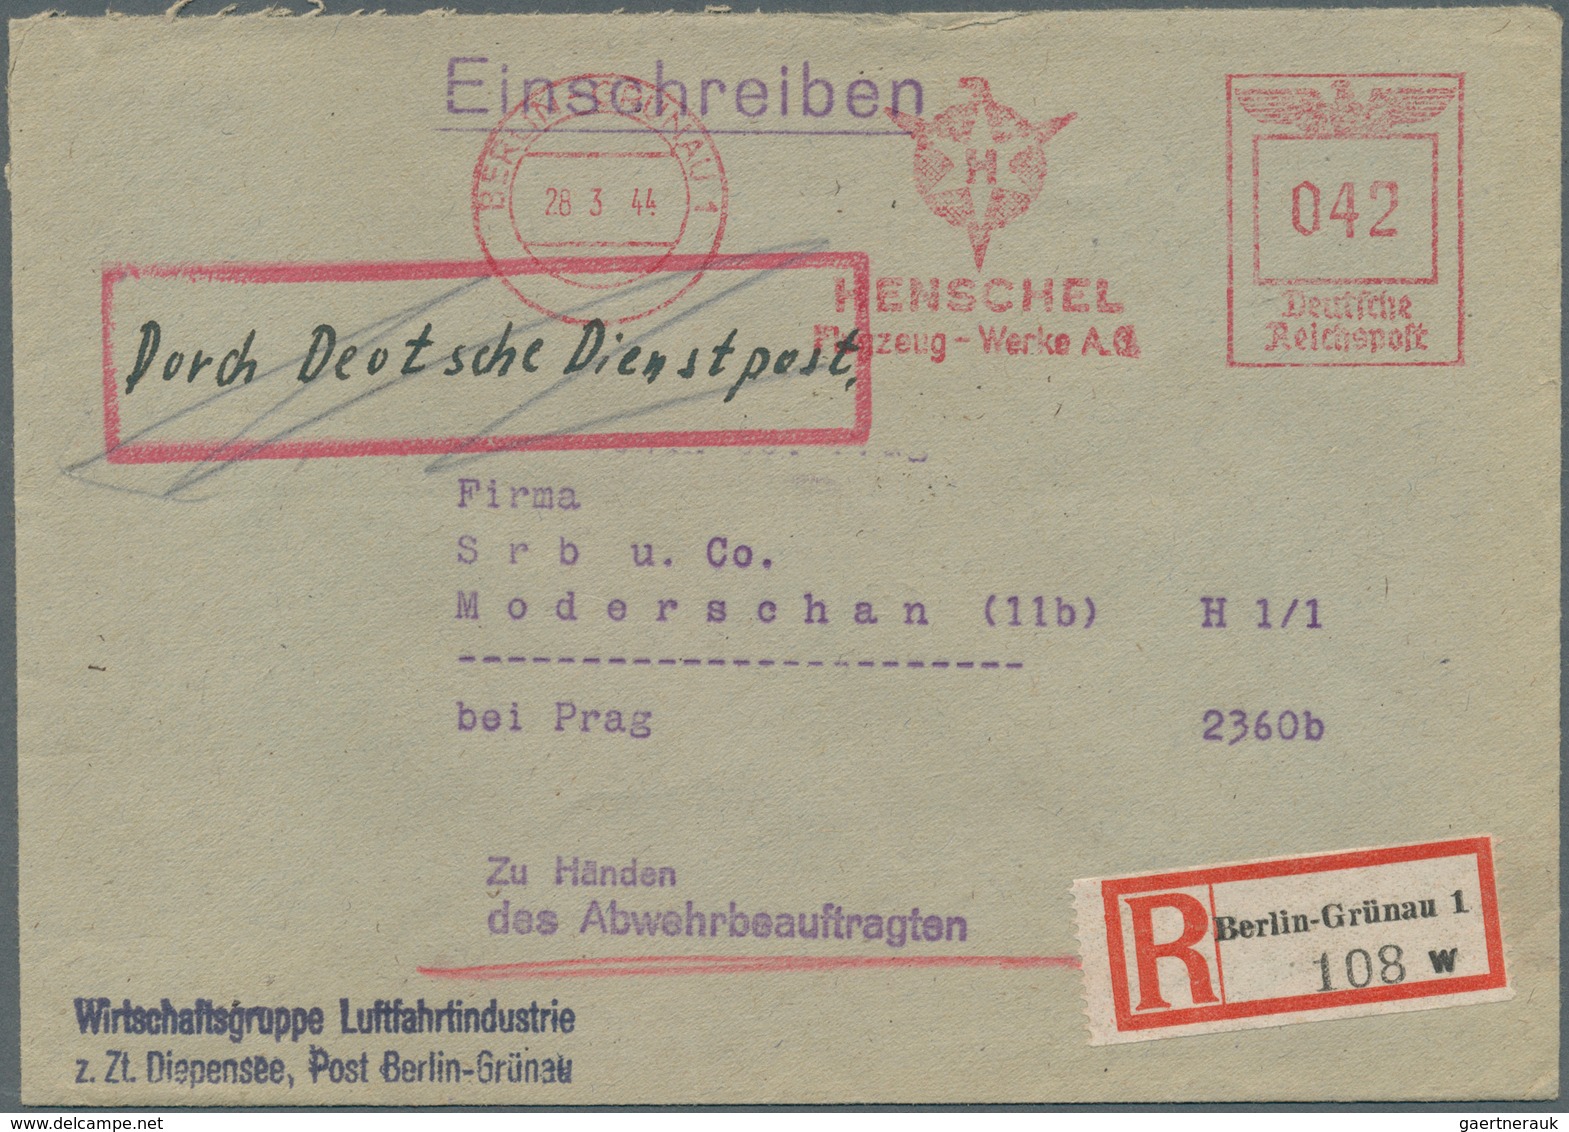 31982 Dt. Besetzung II WK - Böhmen und Mähren: 1939/1945, viele hundert Belege in 10 Steckalben, dabei u.a